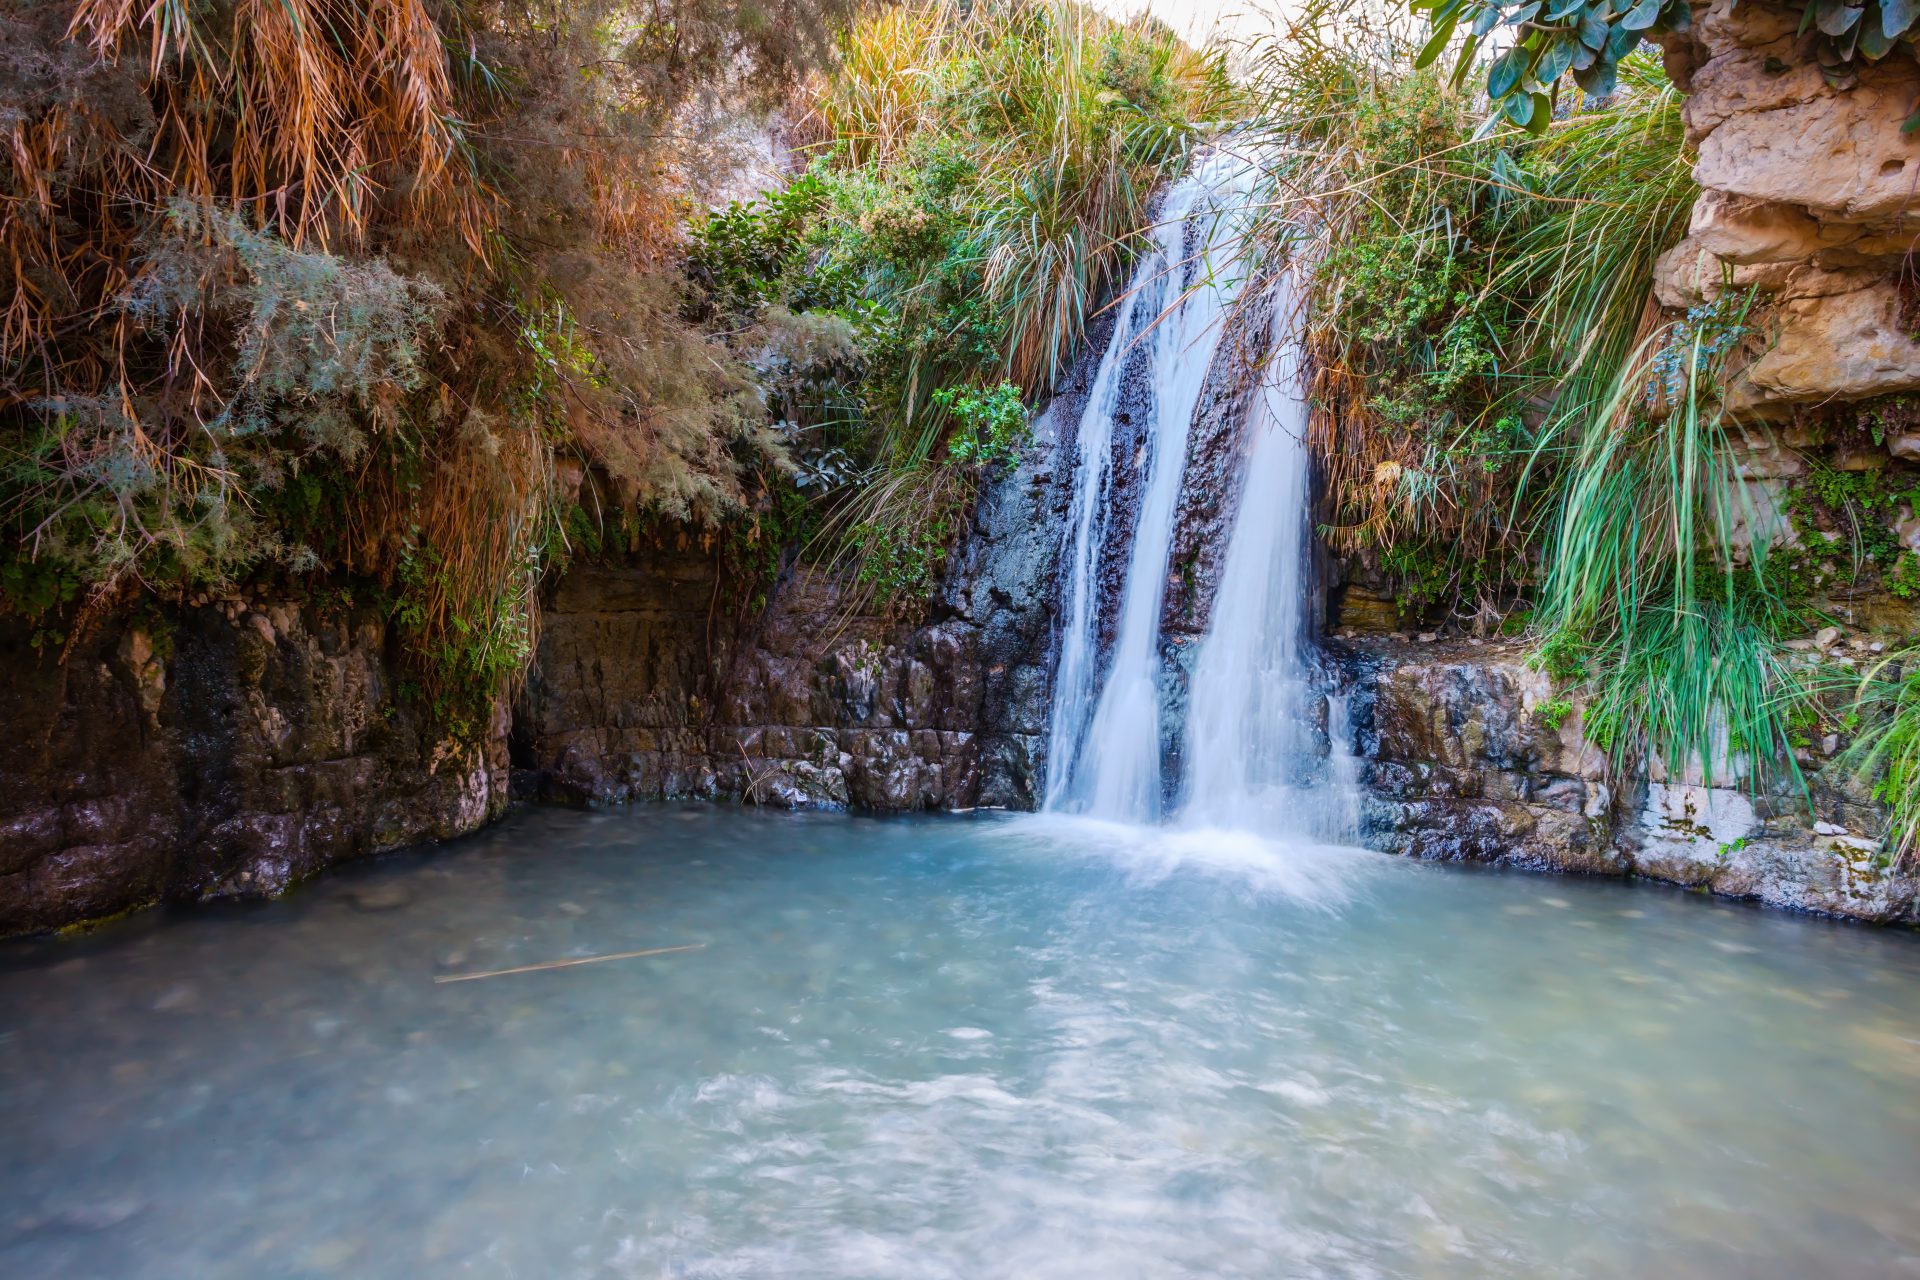 Der malerische Wasserfall und ein kleiner tiefer See mit smaragdfarbenem Wasser. Wandern im Naturschutzgebiet Ein Gedi